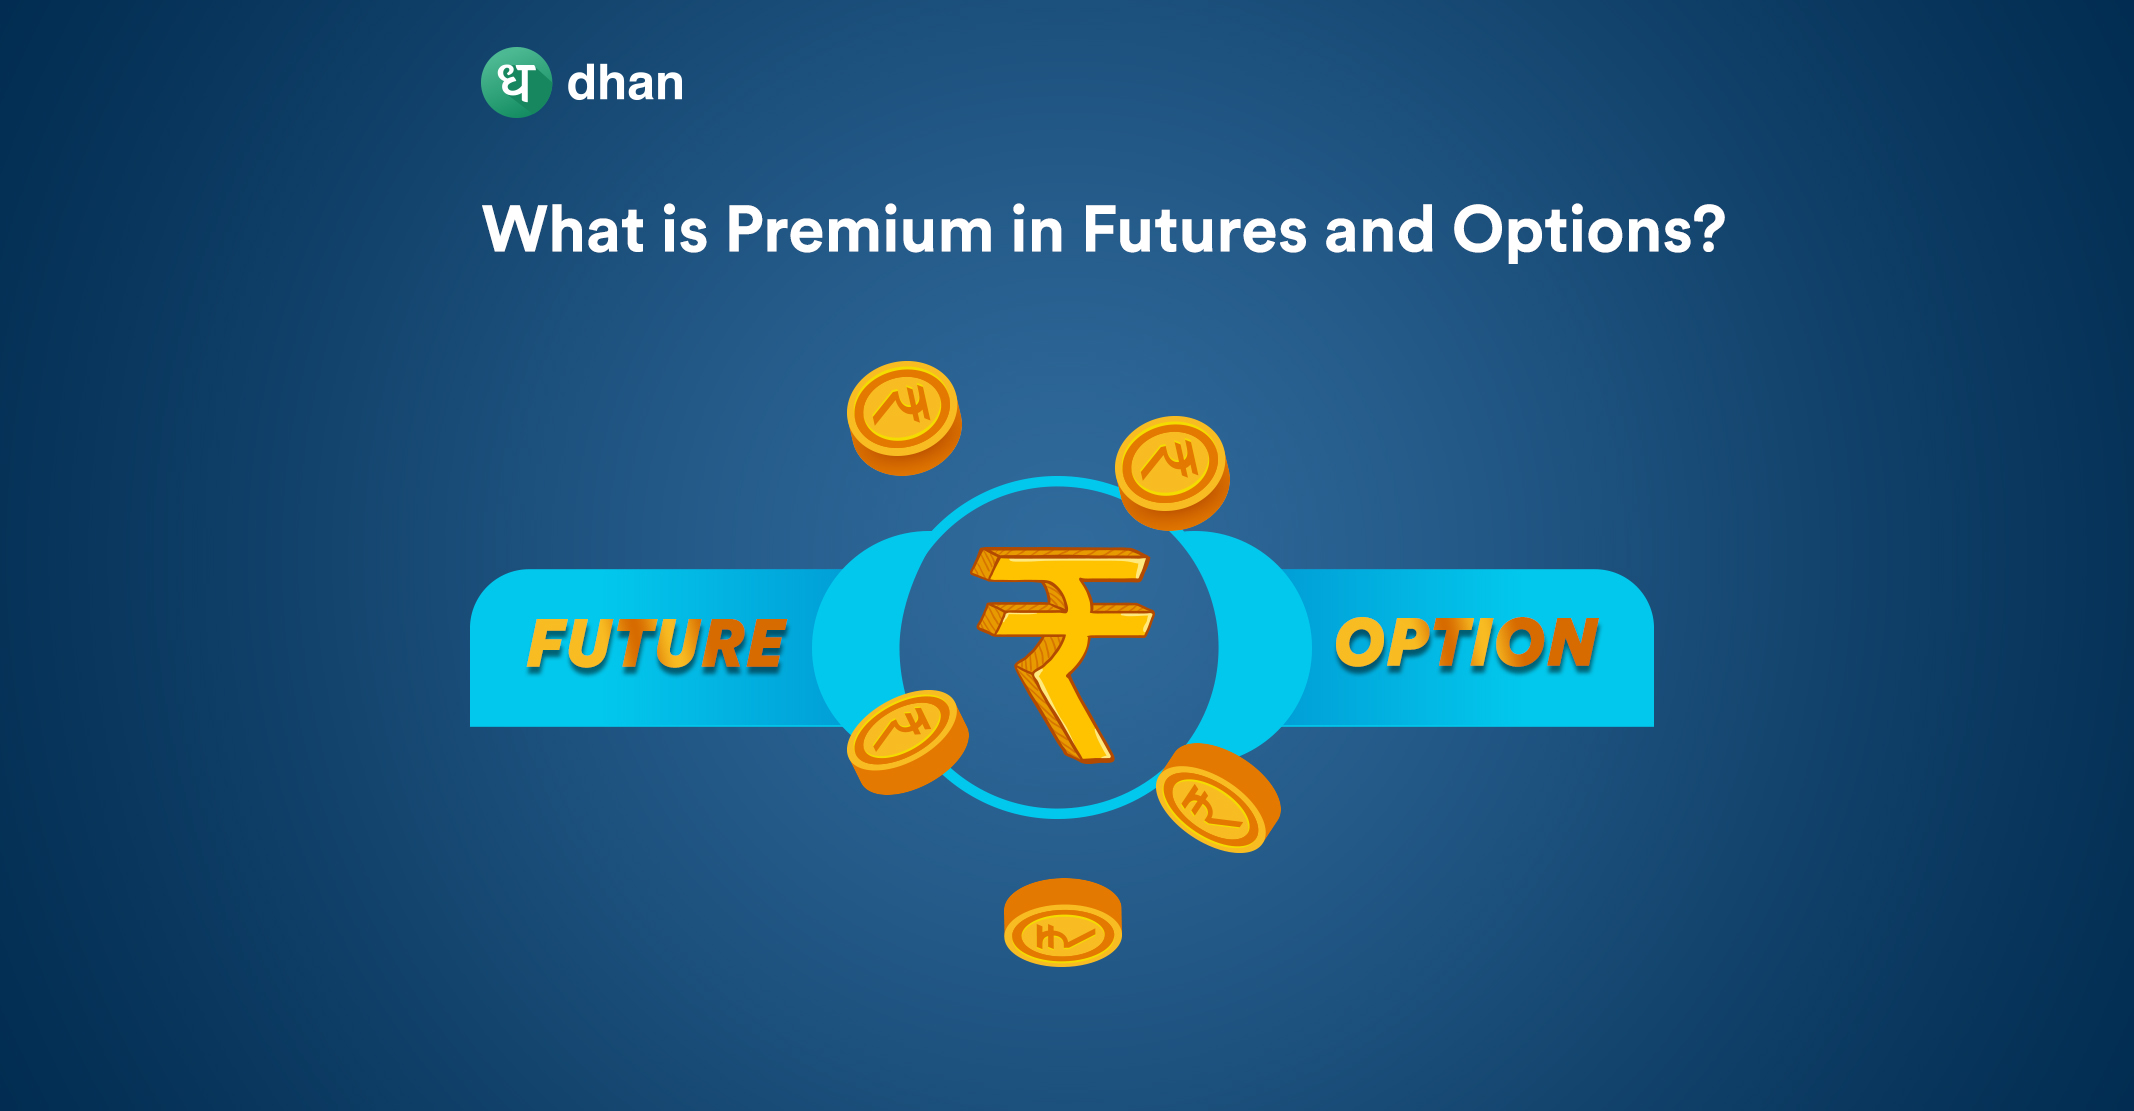 Premium in Futures and Options